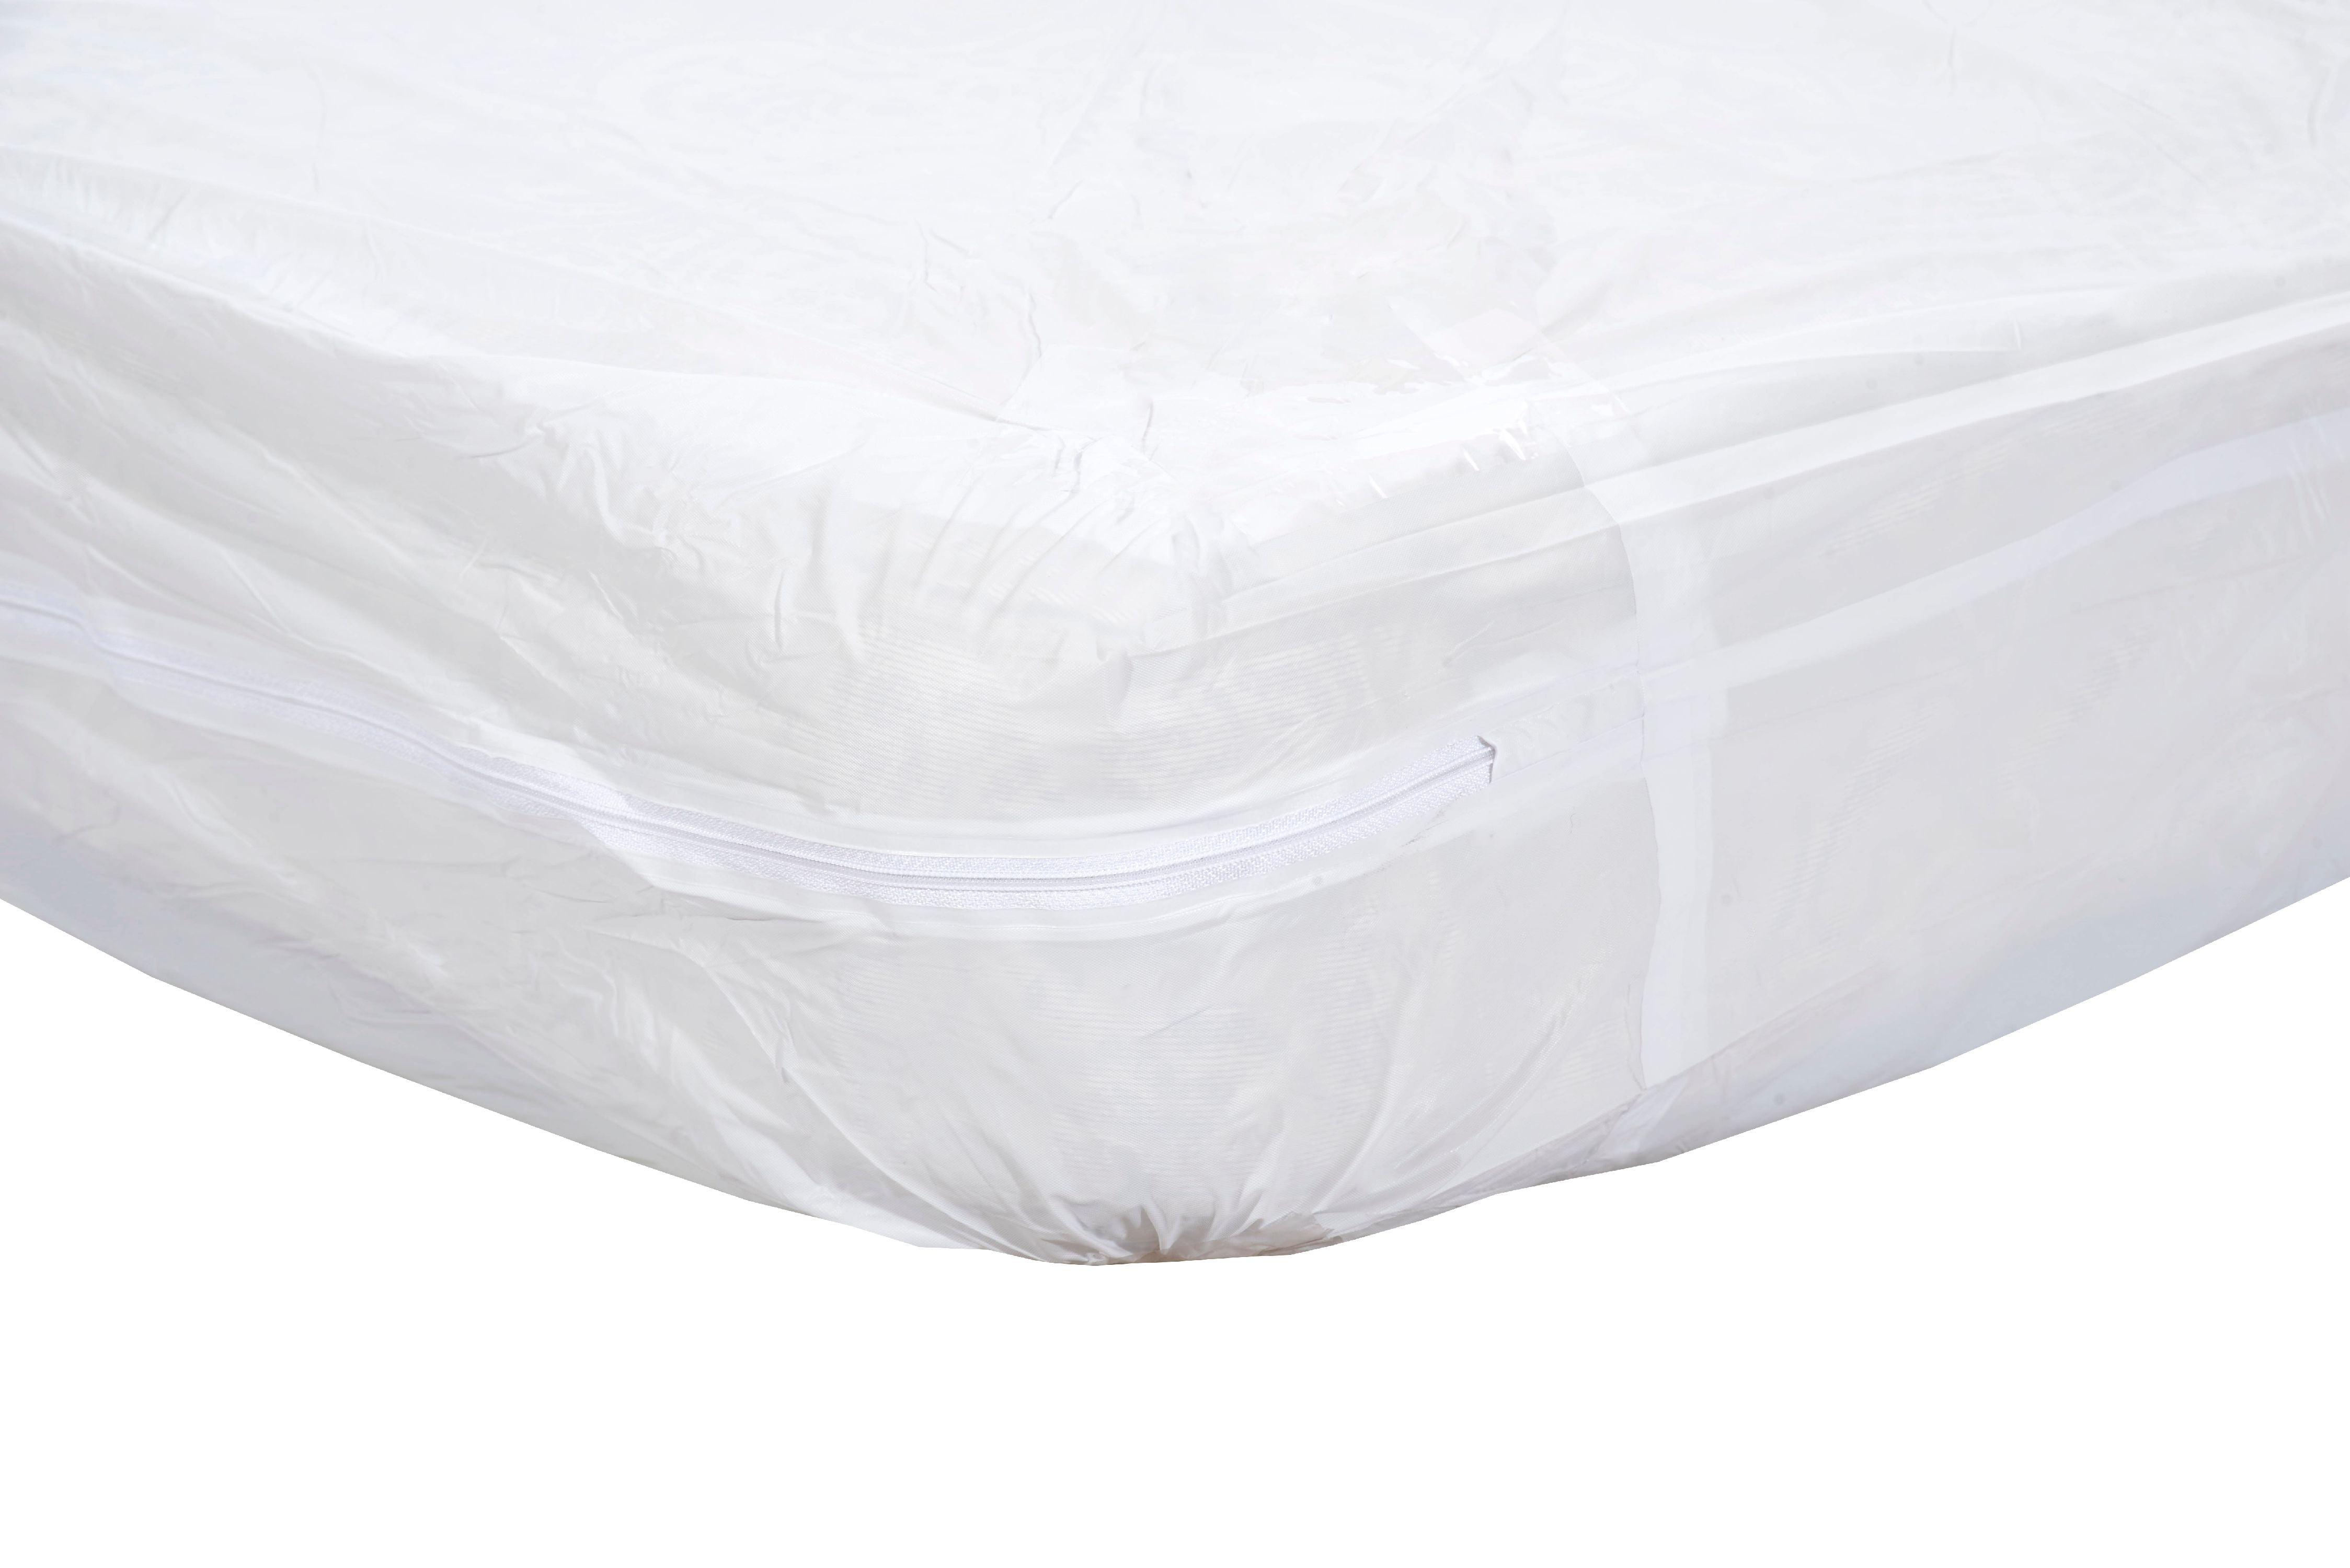 vinyl mattress protector and pad